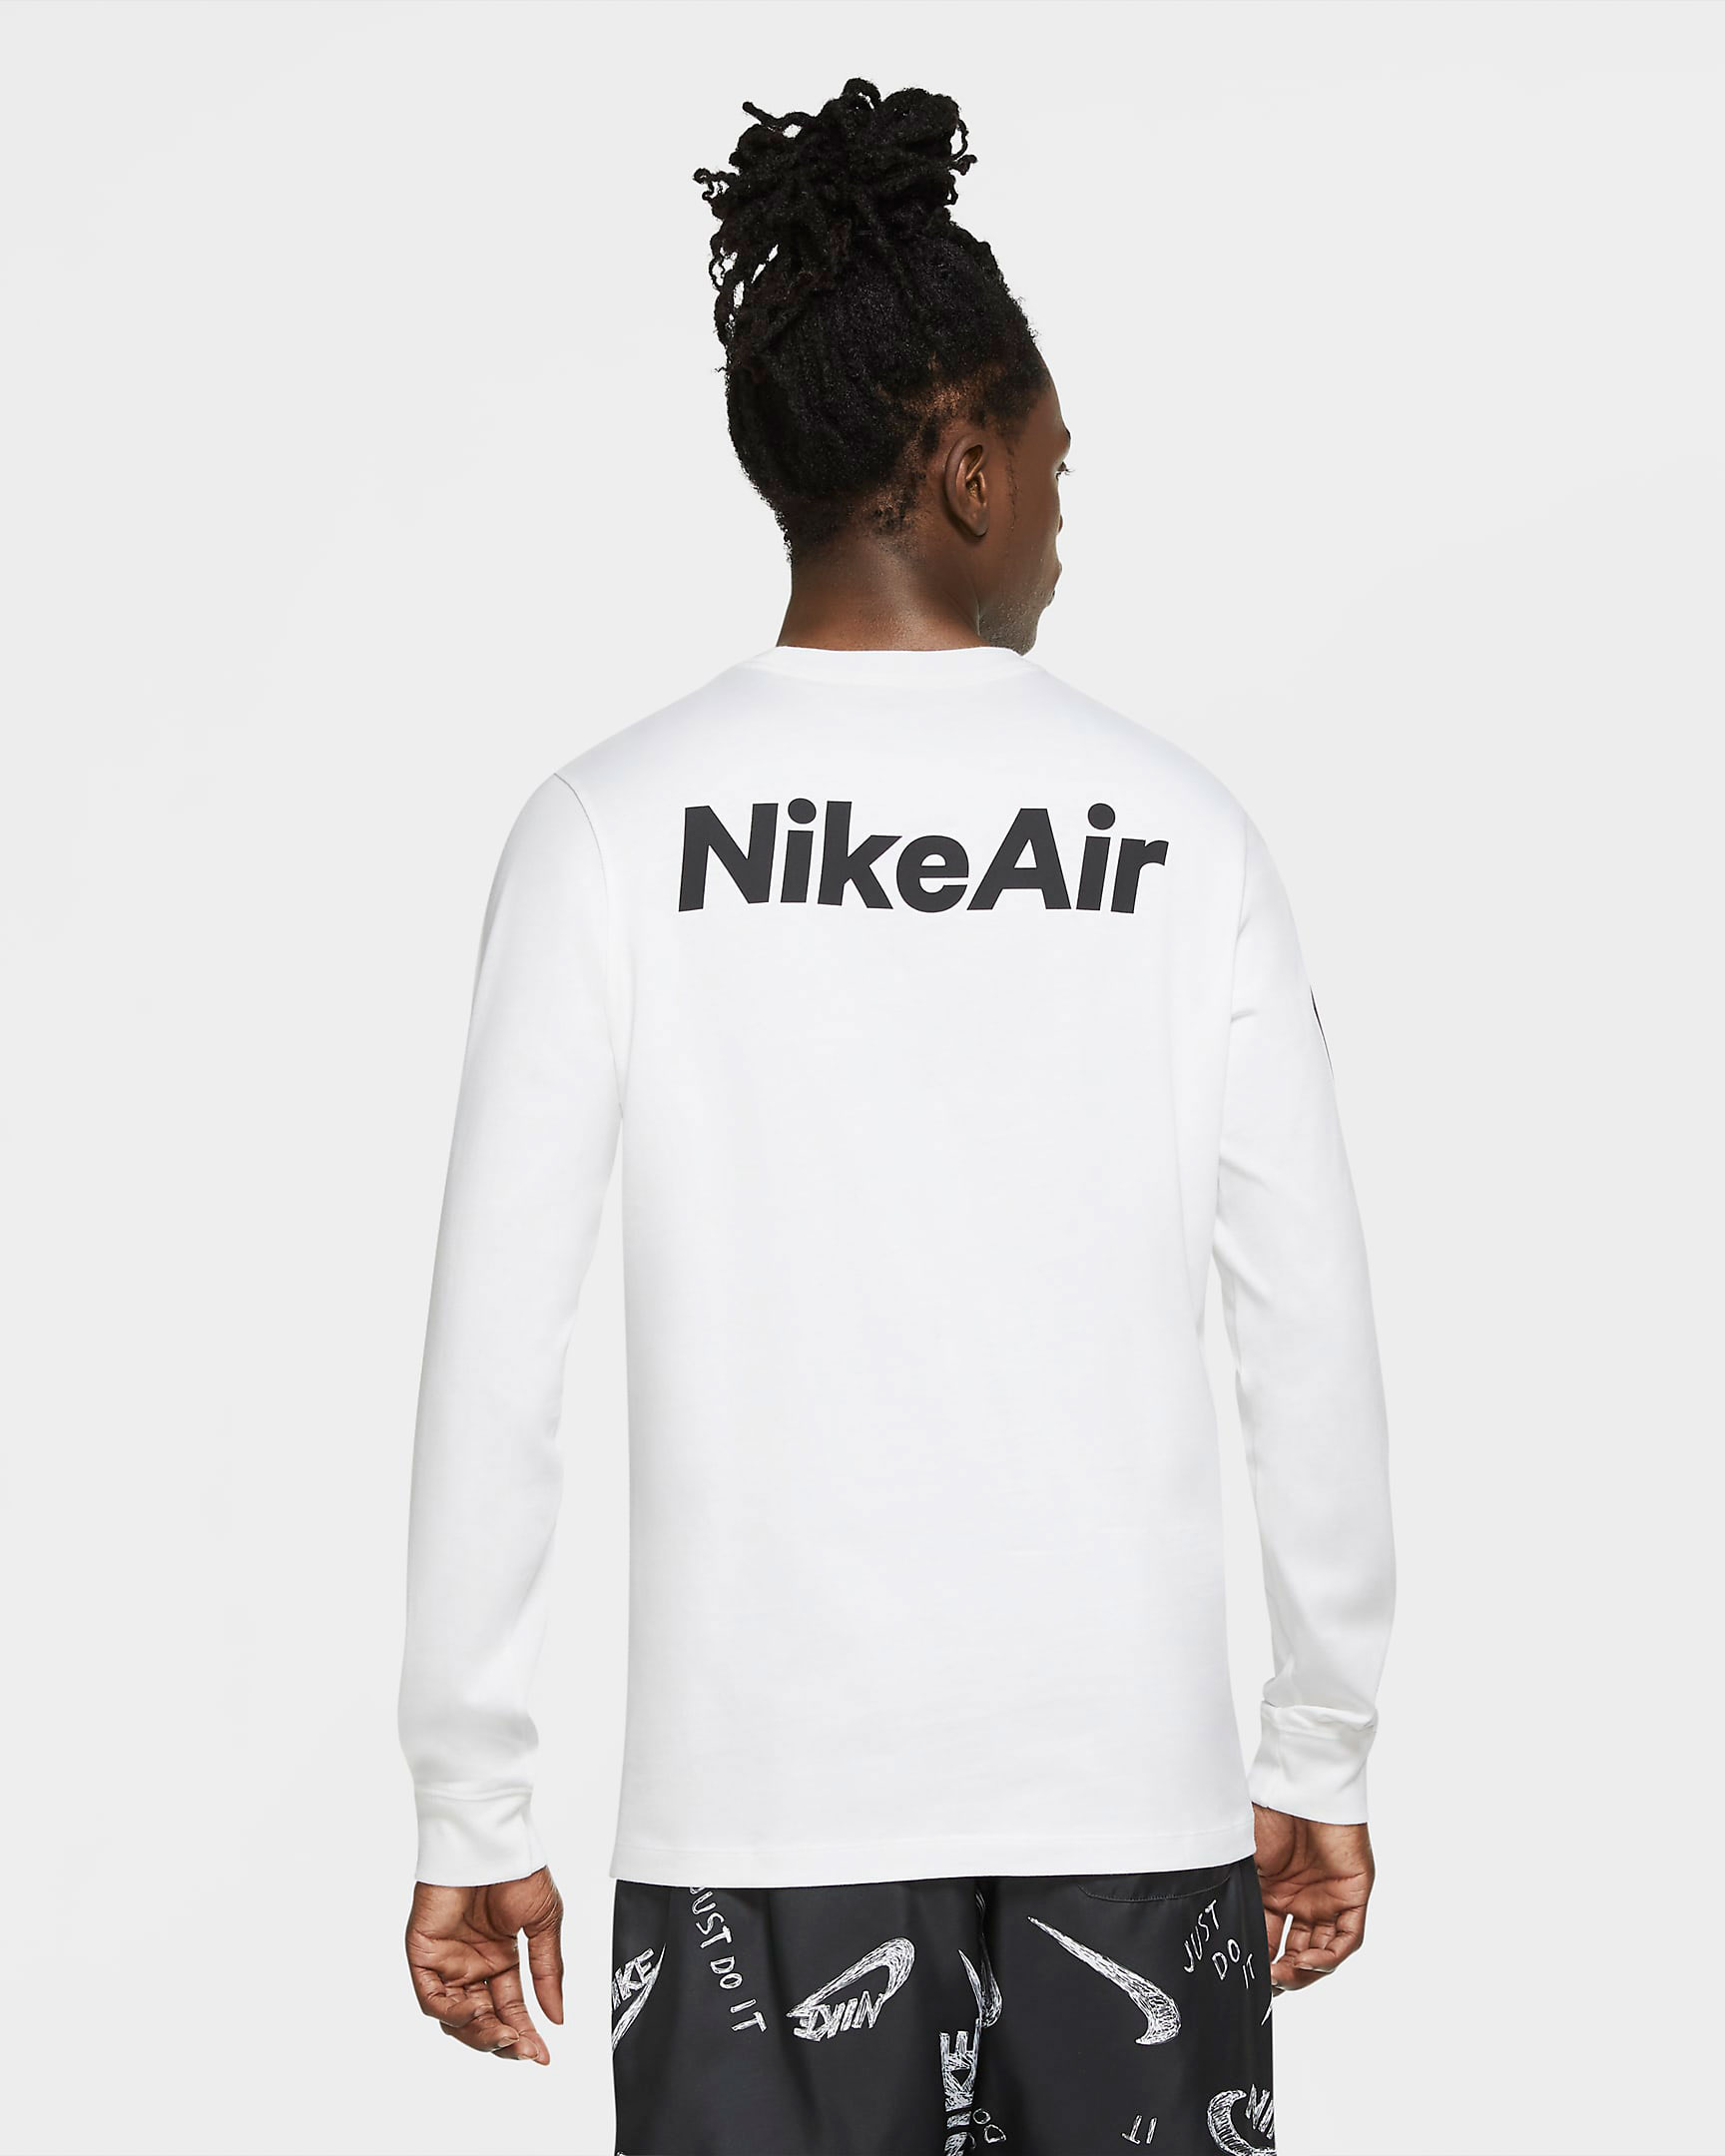 nike-air-long-sleeve-shirt-white-black-2